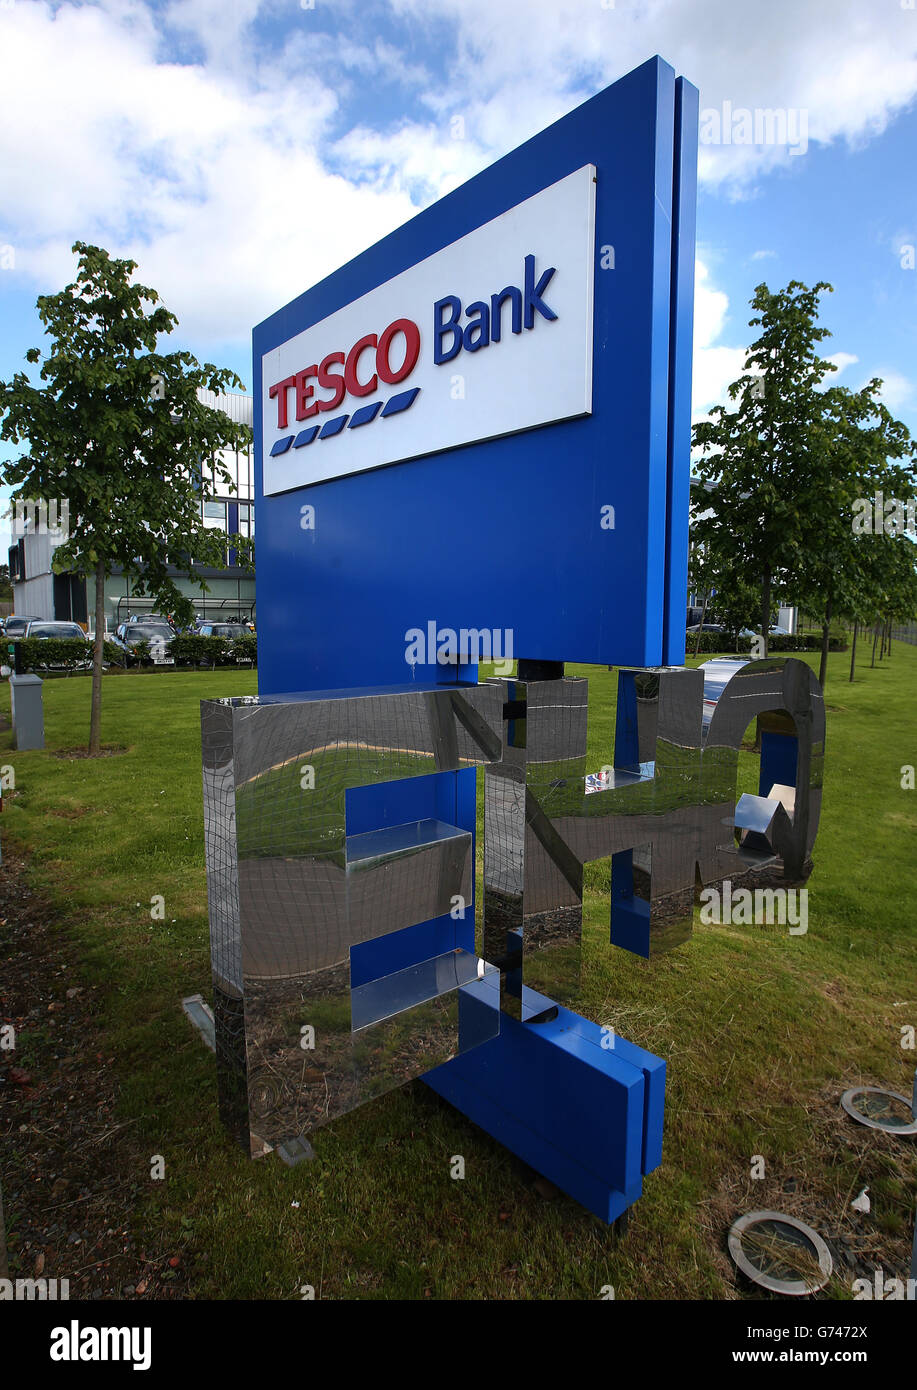 Allgemeiner Blick auf das Tesco Bank Büro in South Gyle, Edinburgh, als der Supermarktriese die Bankengiganten der High Street übernahm, als er sein erstes Girokonto mit einem Schlag auf den "lächerlich schlechten Wert" von Rivalen startete. Stockfoto